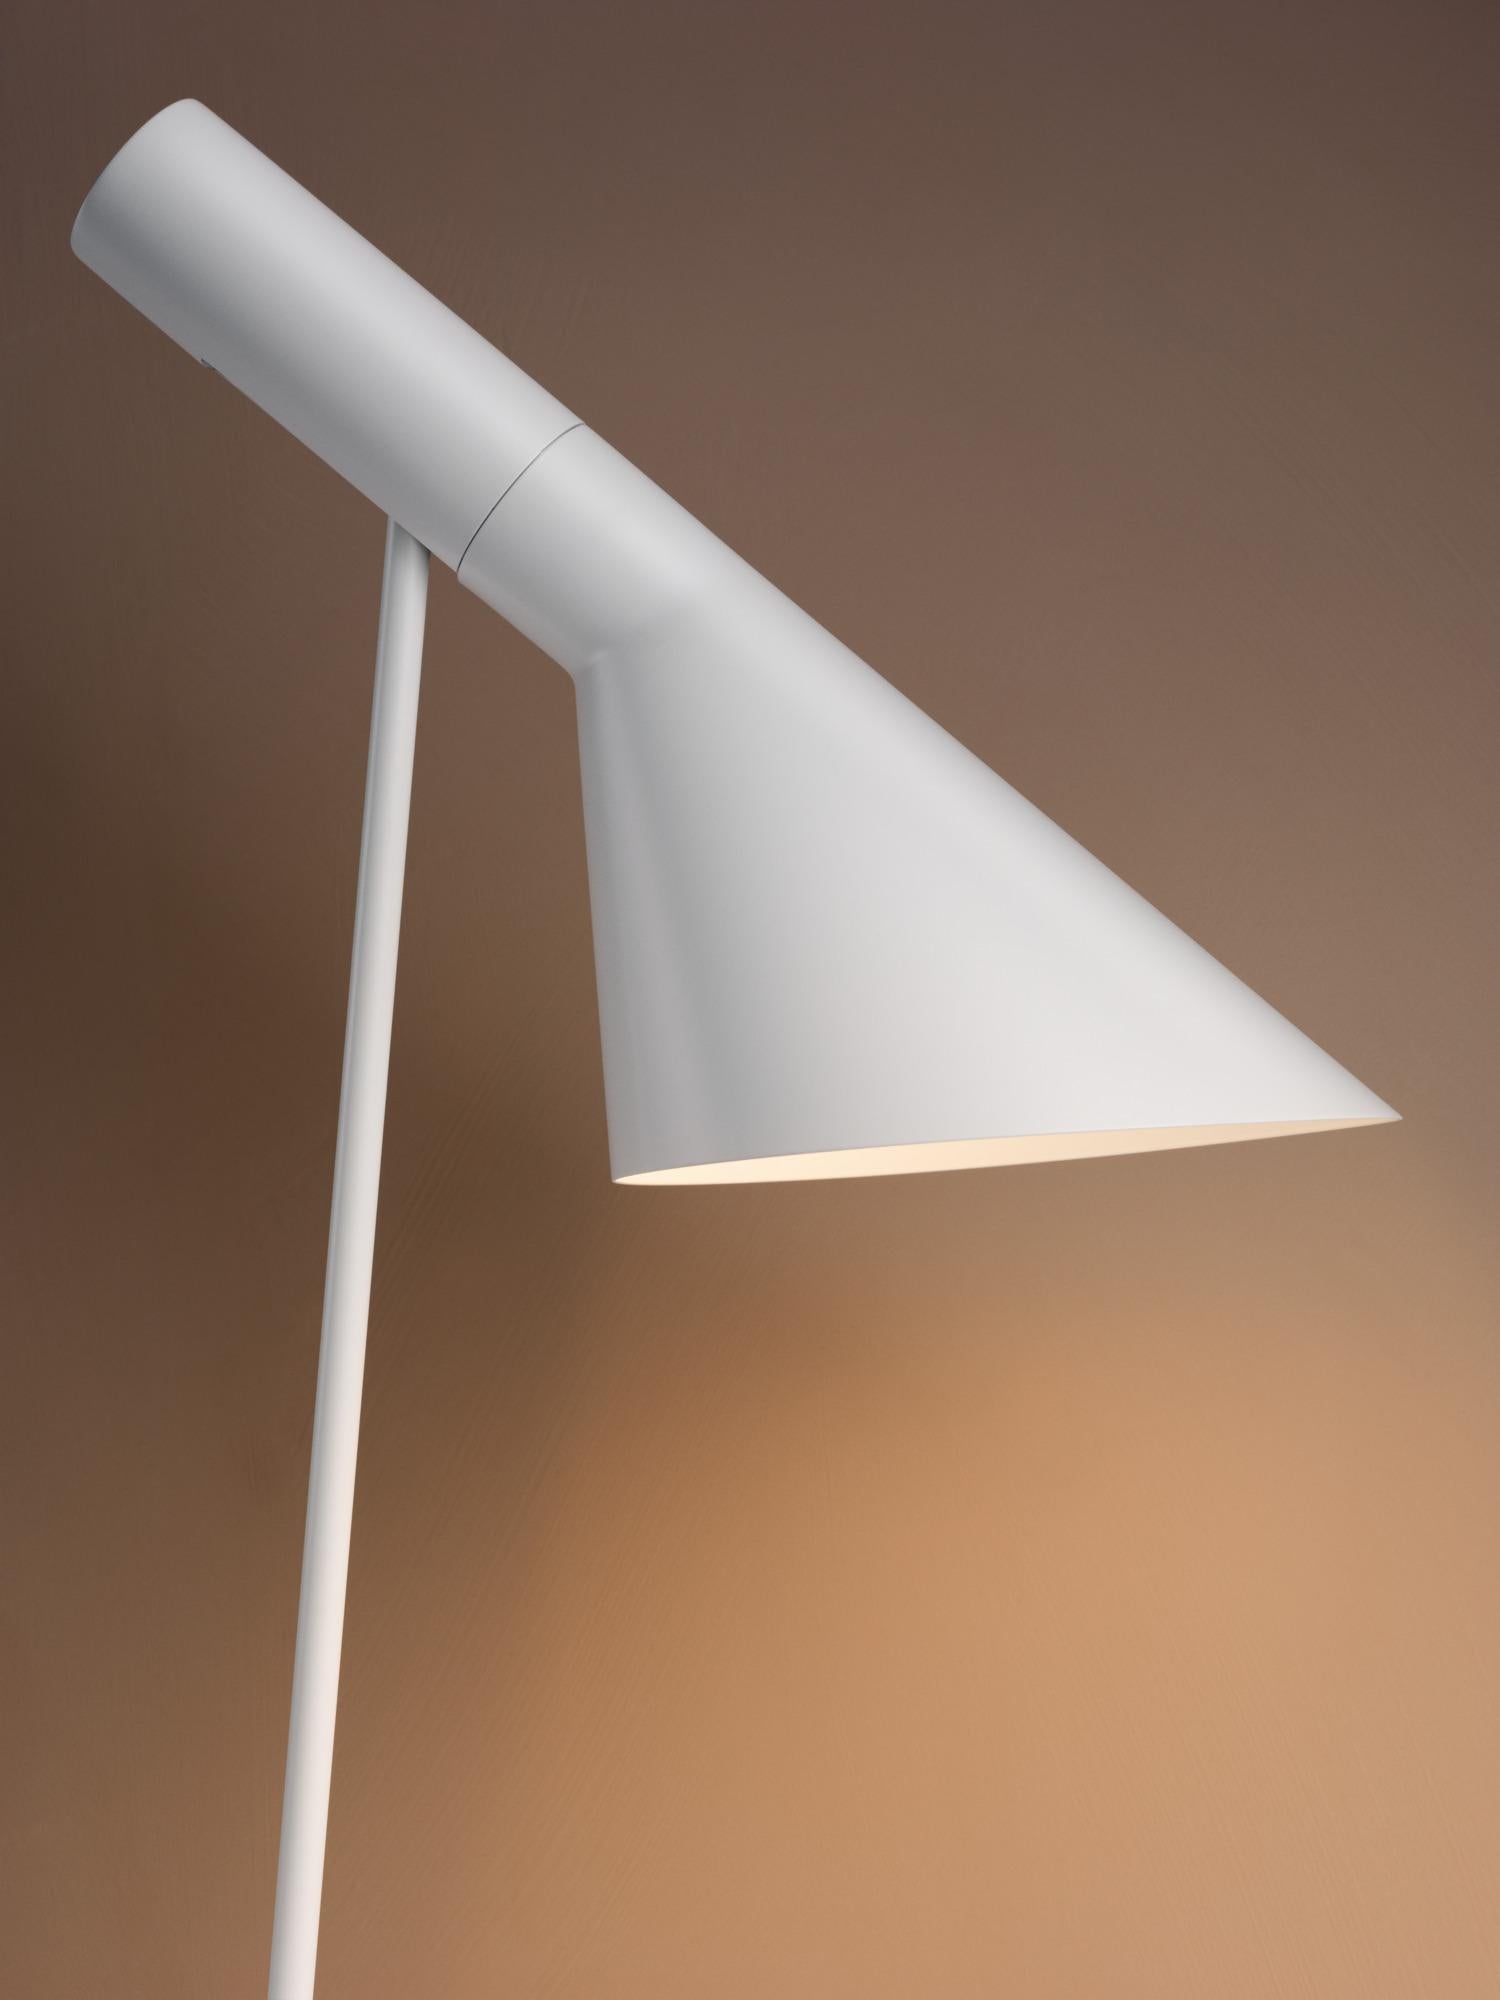 Scandinavian Modern Arne Jacobsen AJ Table Lamp in White for Louis Poulsen For Sale